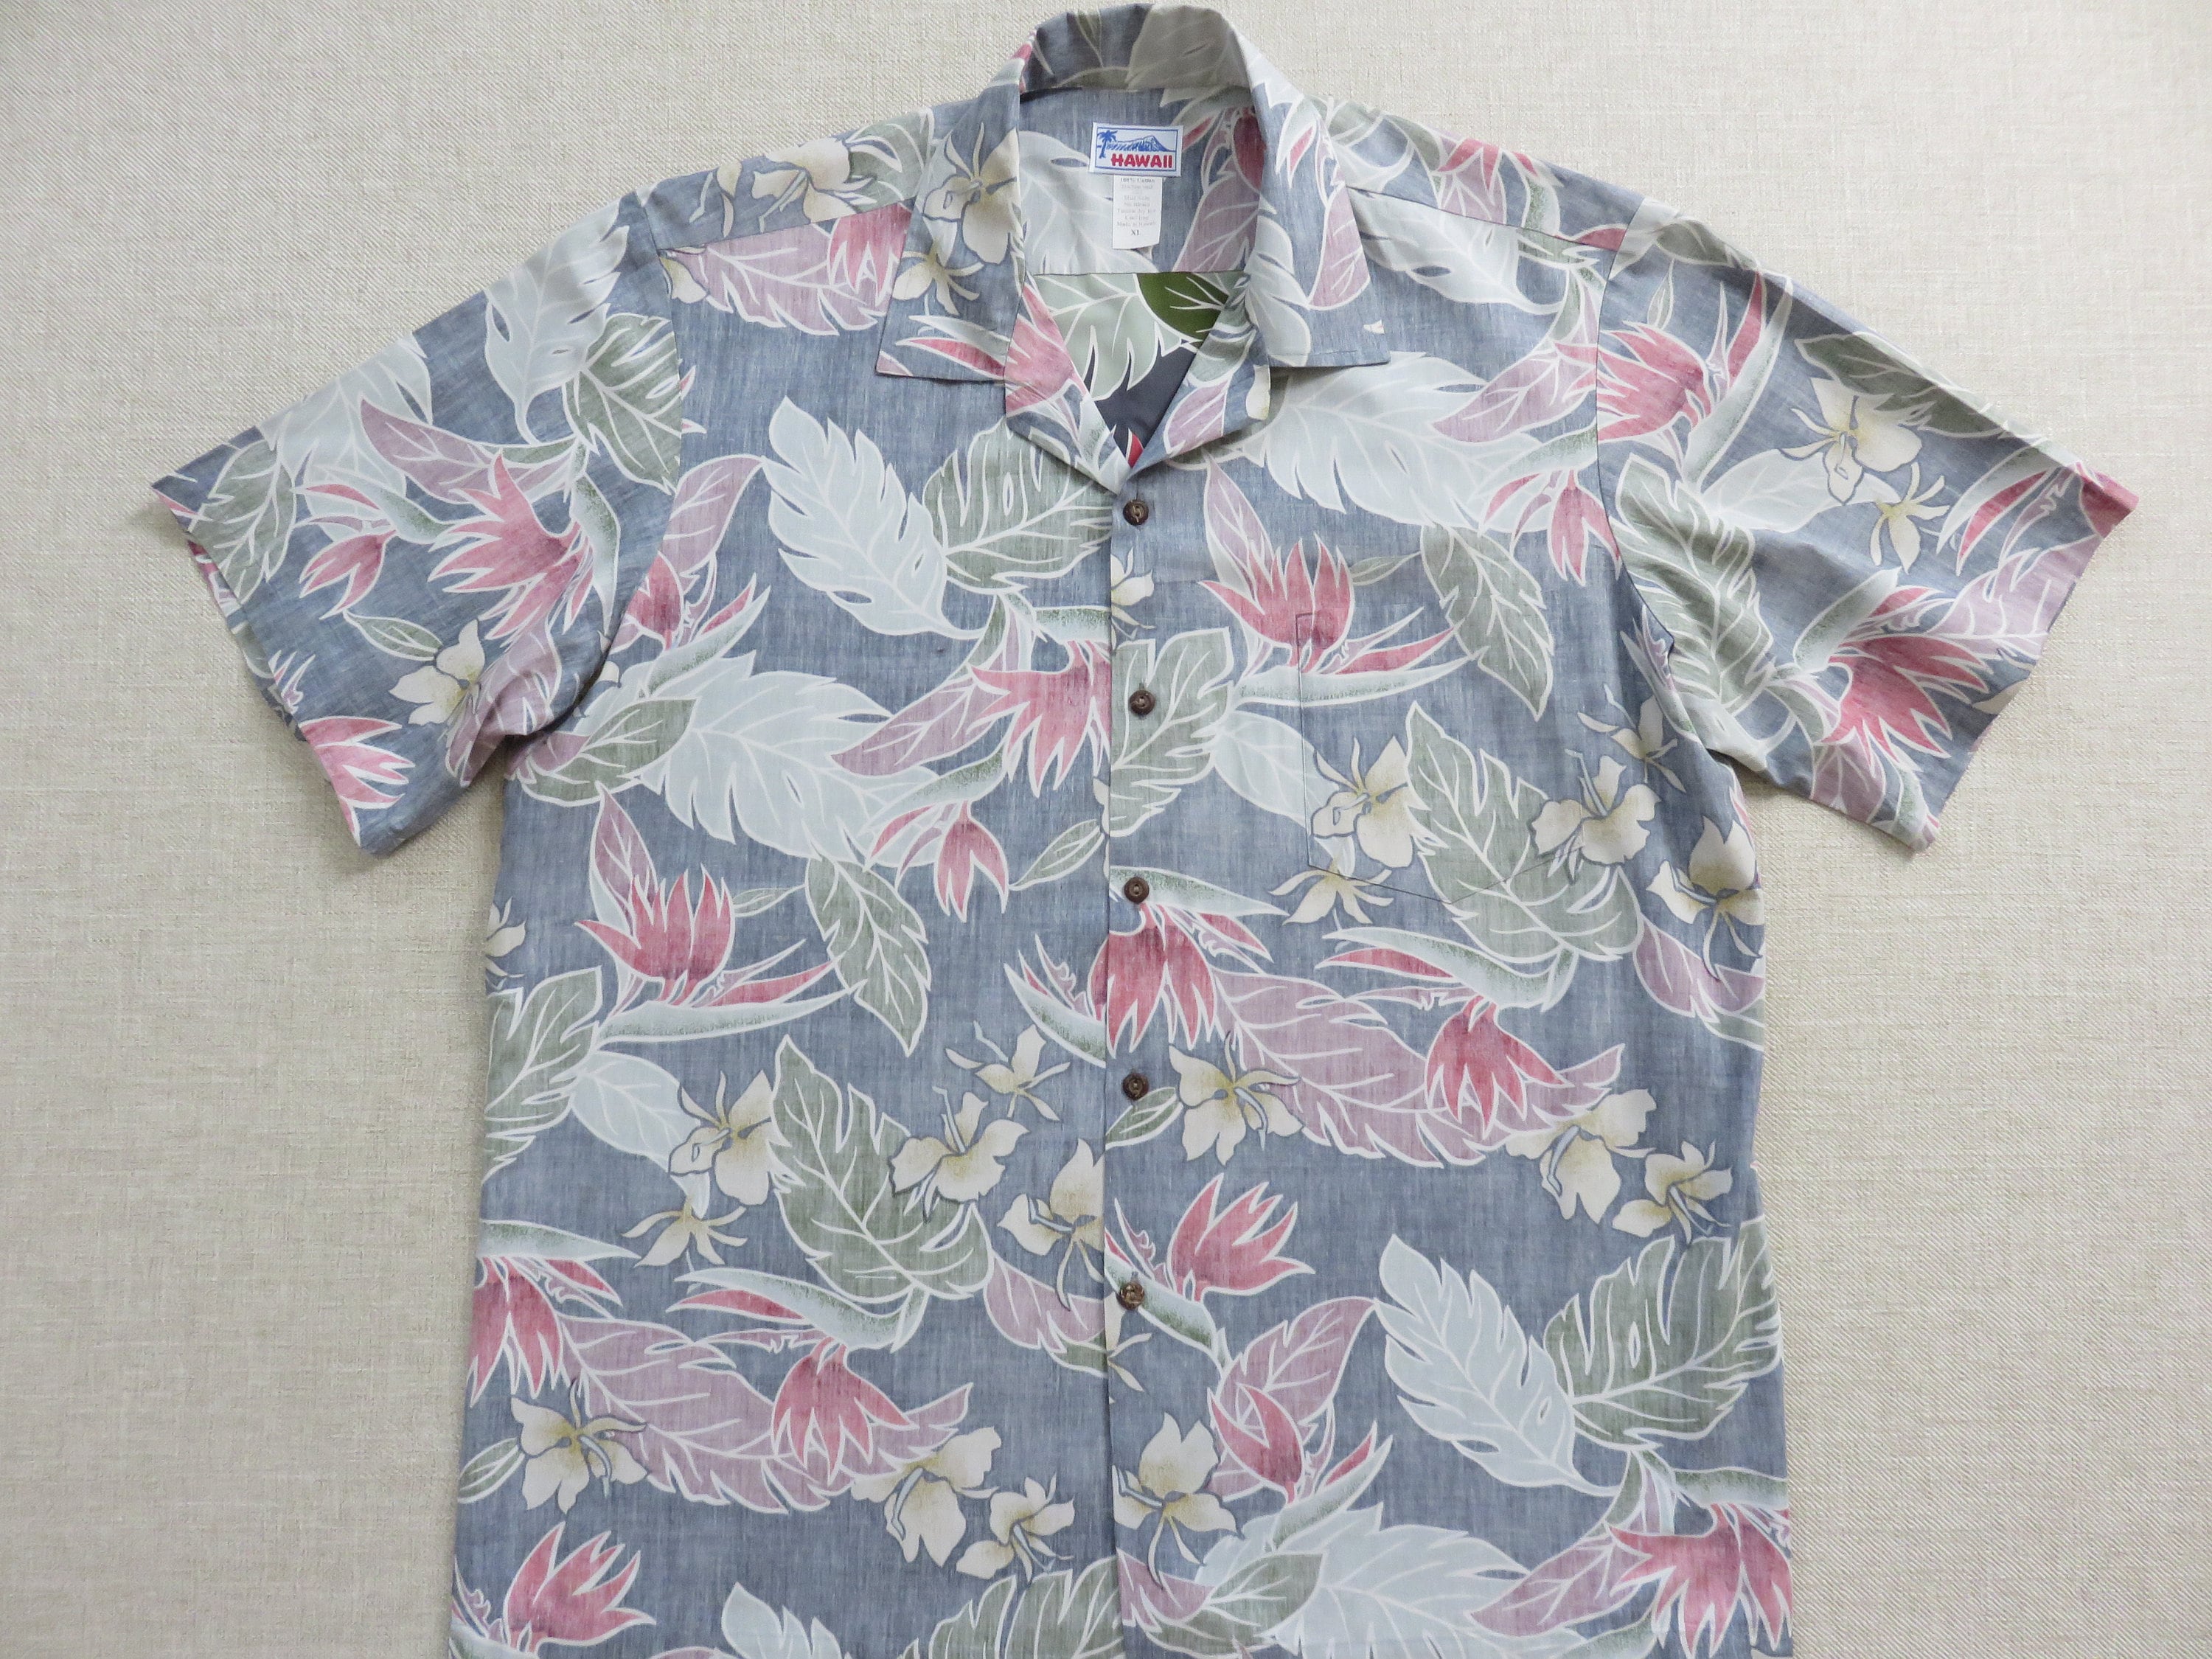 HAWAII Hawaii Shirt Made in HAWAII Hawaiian Shirt Men | Etsy